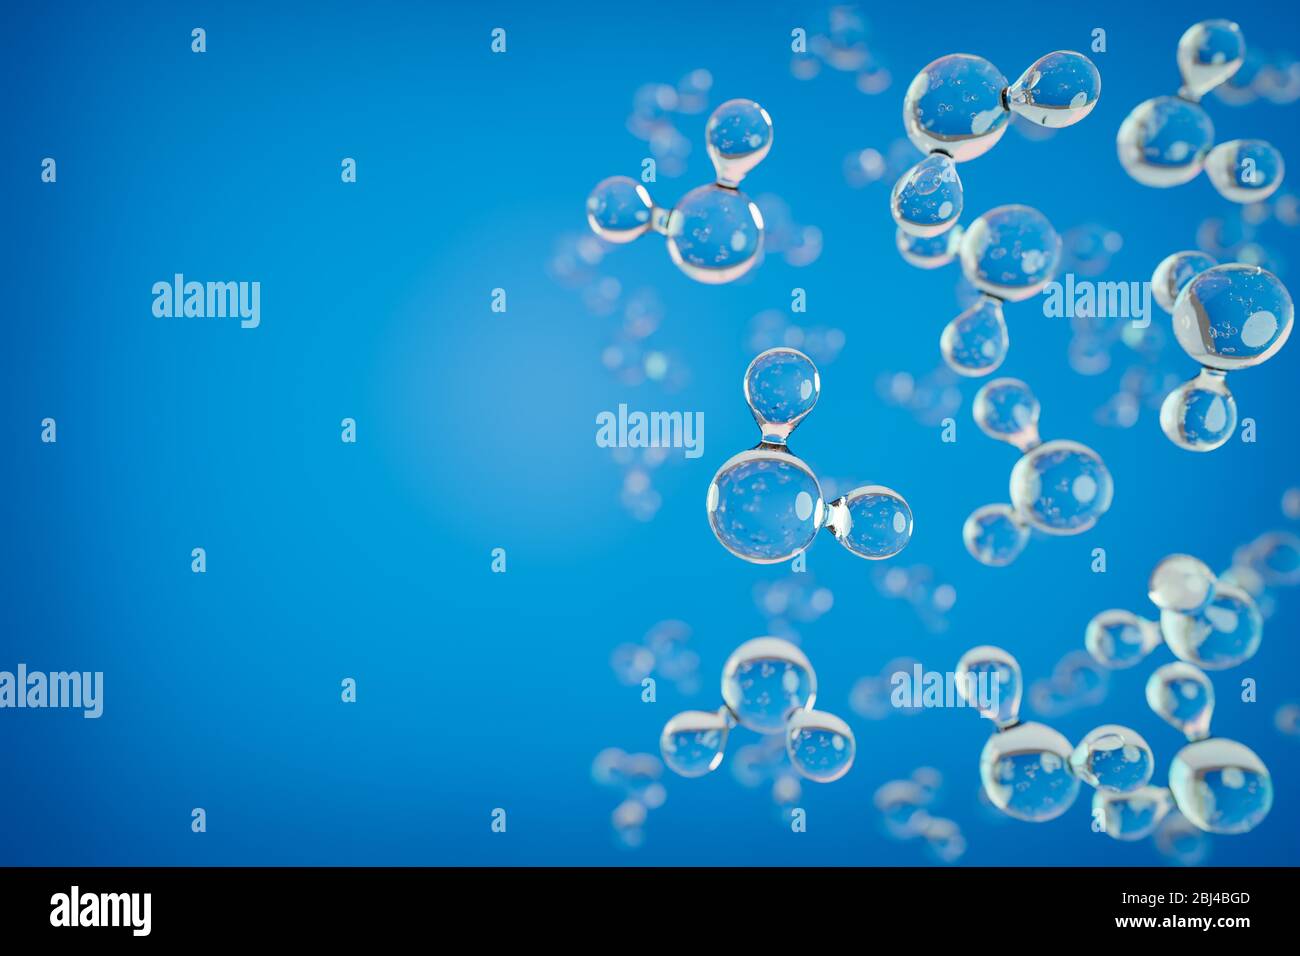 3d-Rendering: Modelle von H2O-Wassermolekularen vor blauem Hintergrund. Kopieren Sie den Bereich nach links oder rechts (oder oben/unten, wenn Sie vertikal verwendet werden). Selektiv Stockfoto